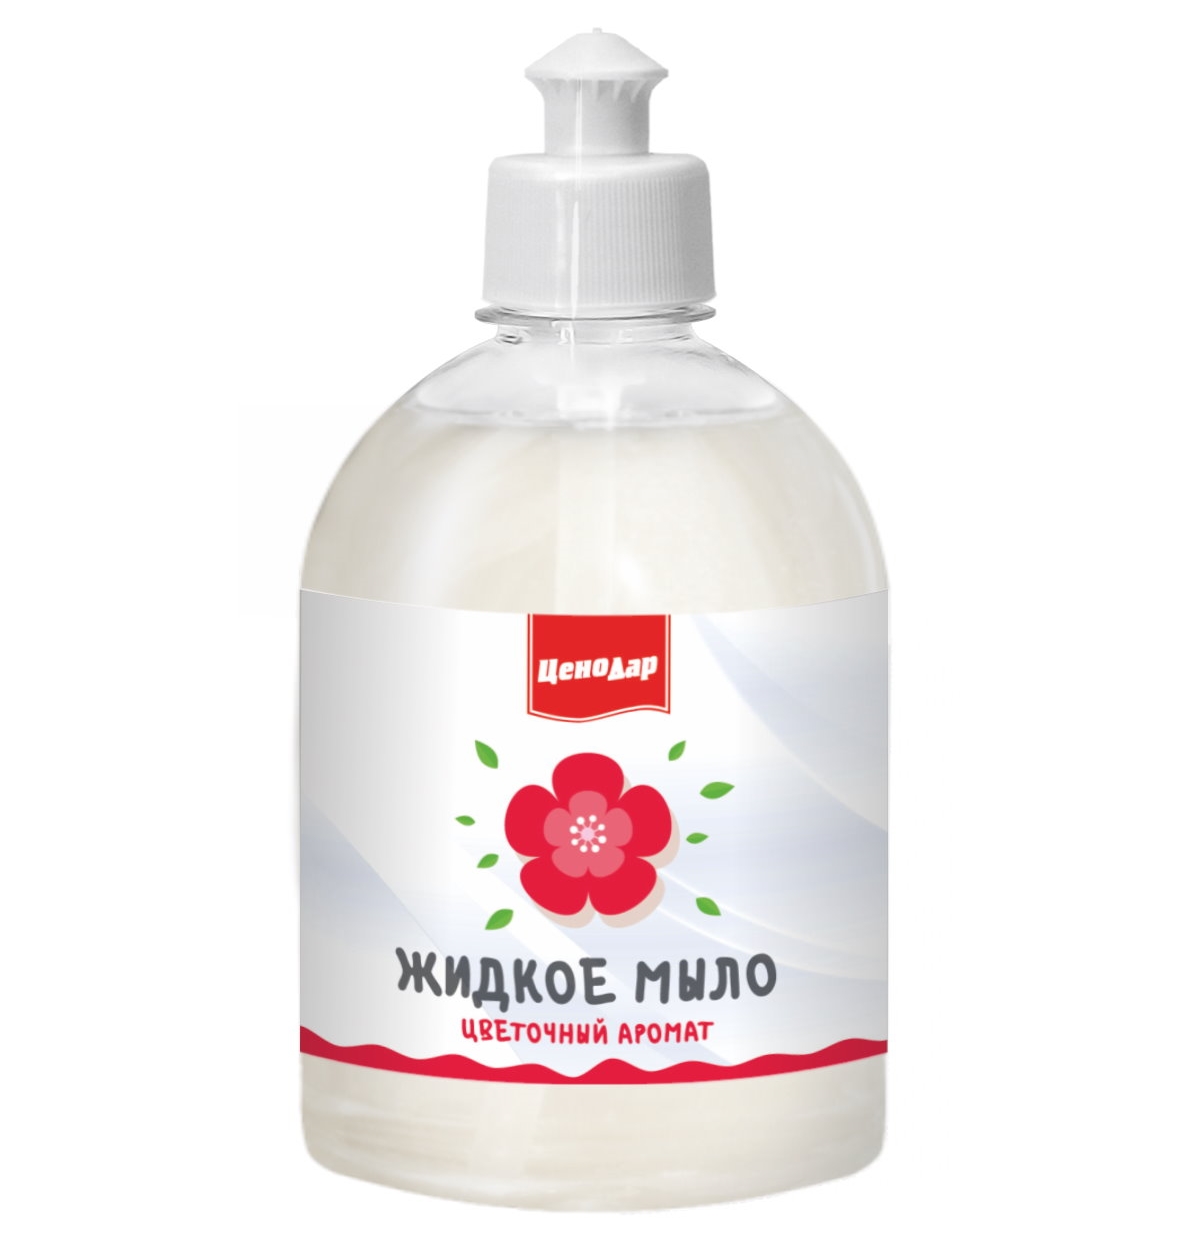 Жидкое мыло ЦеноДар Цветочный аромат 500 мл жидкое мыло для рук flexfresh d soap аромат манго и кориандр 3 л